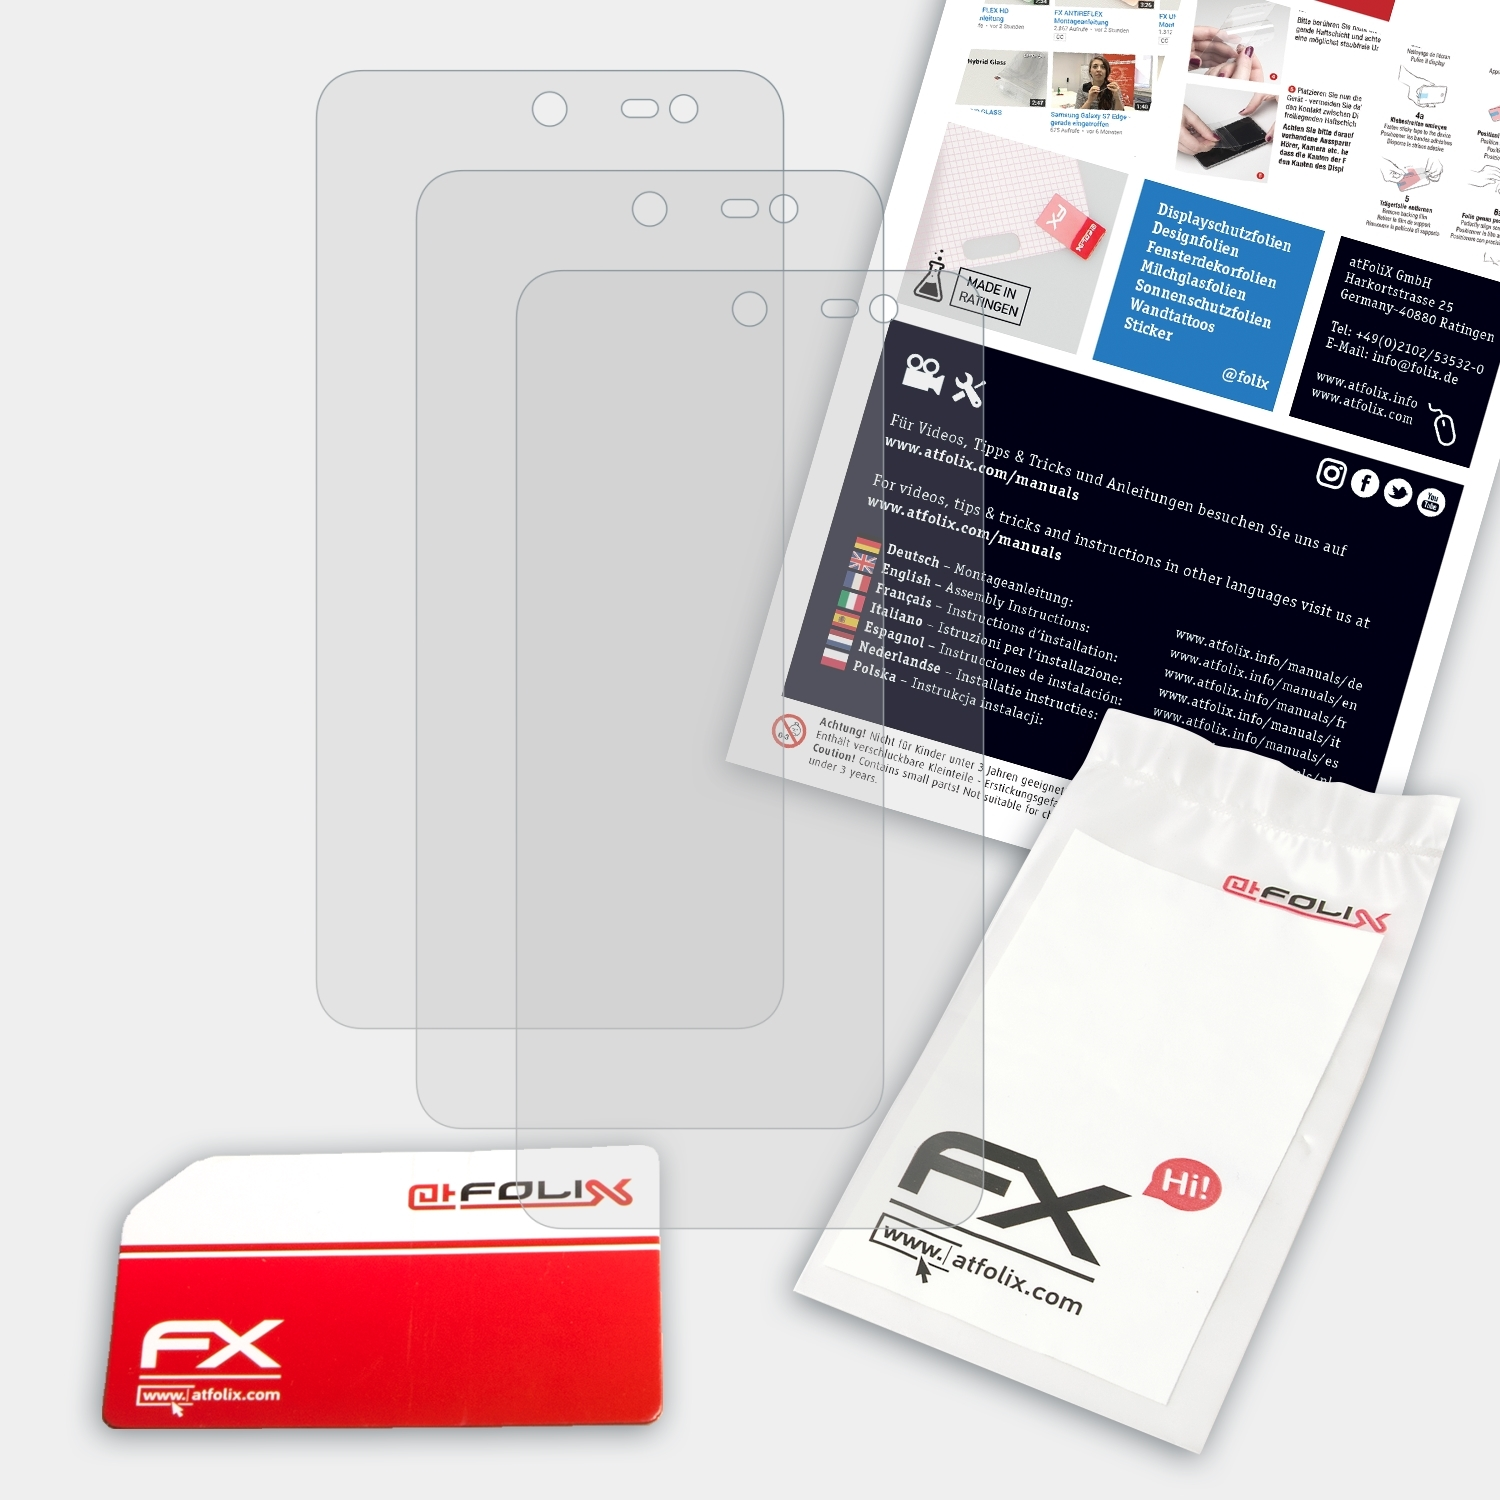 Swift) FX-Antireflex ATFOLIX Displayschutz(für WileyFox 3x